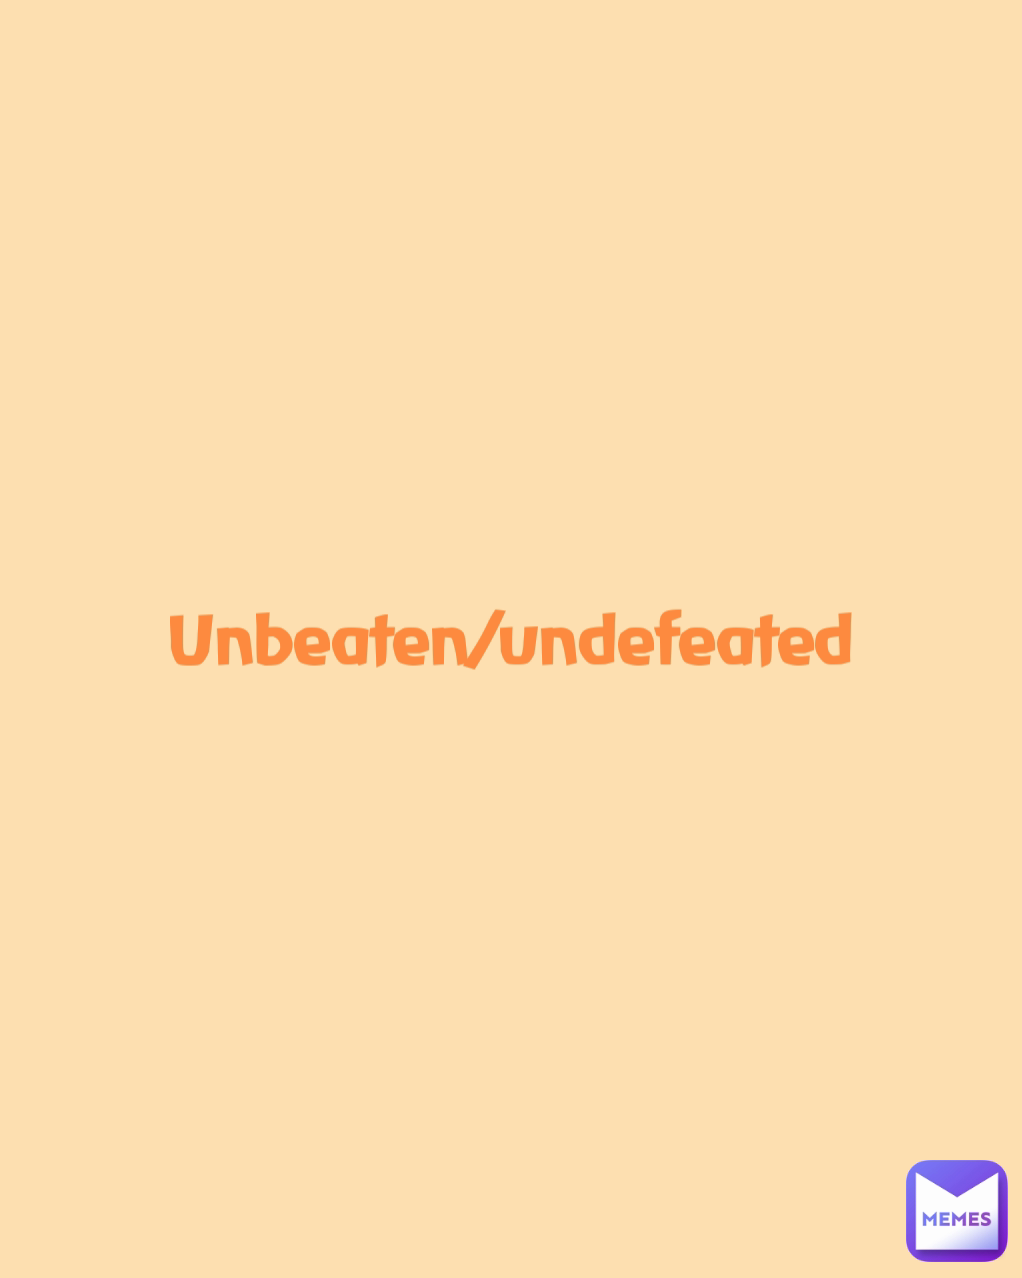 Unbeaten/undefeated